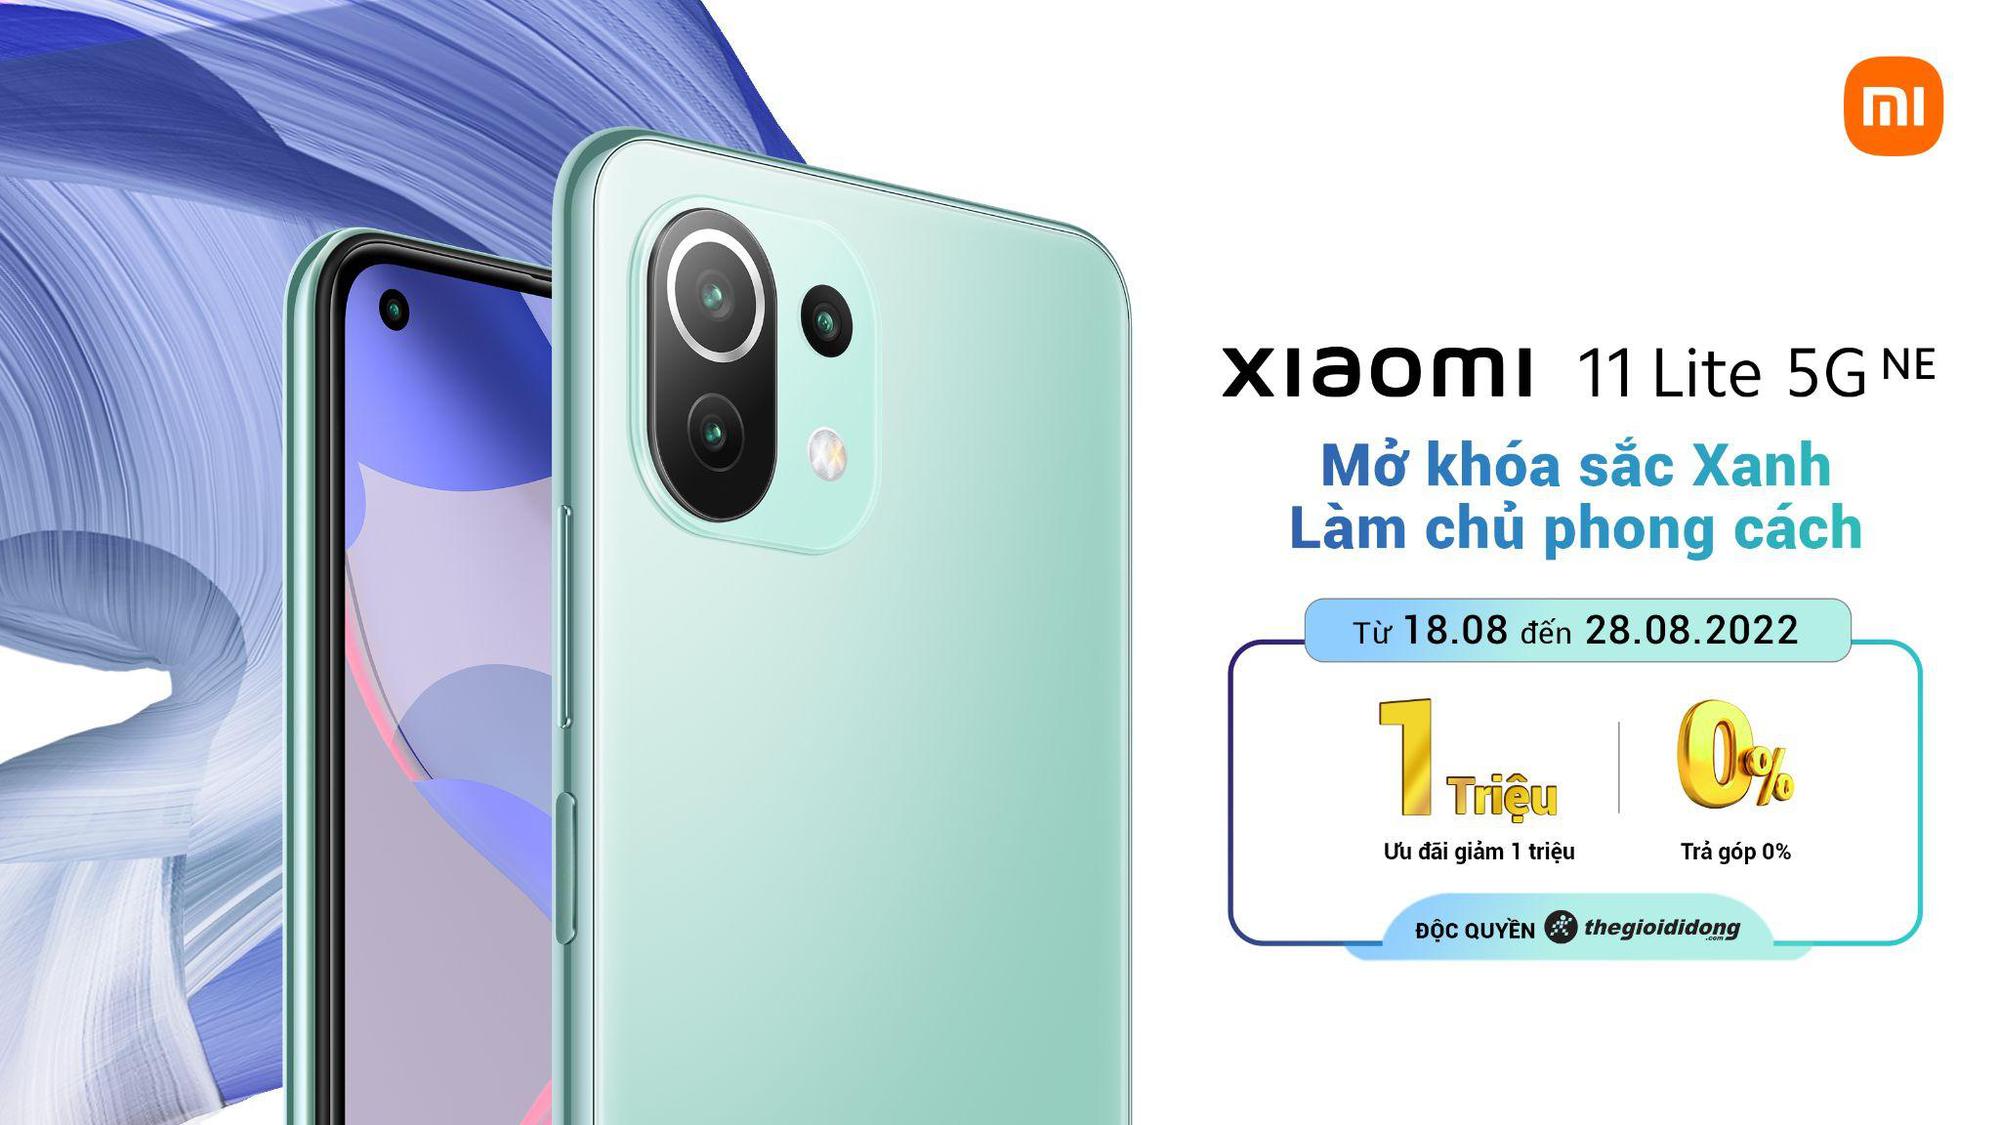 Xiaomi 11 Lite 5G NE ra mắt phiên bản màu đặc biệt mới Xanh Bạc Hà tại Thế Giới Di Động, cùng nhiều ưu đãi hấp dẫn - Ảnh 1.